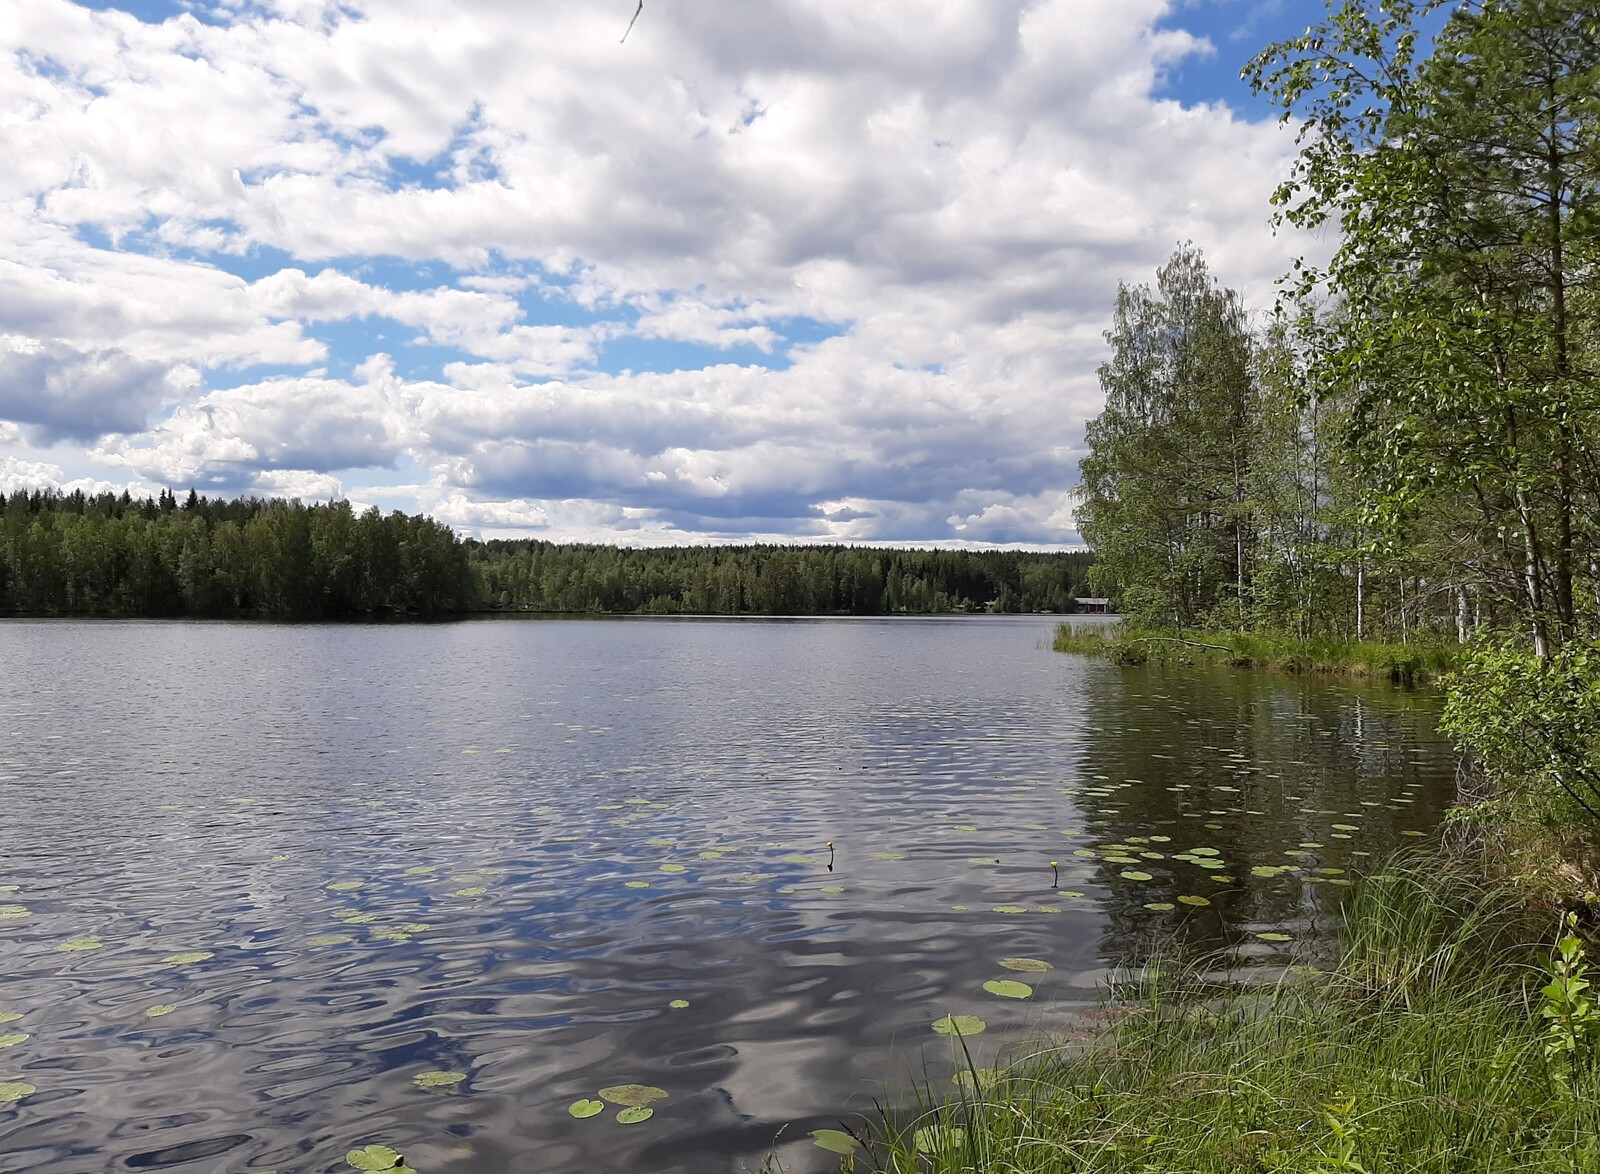 Kesäinen sekametsä reunustaa järveä ja puolipilvinen taivas heijastuu veteen.